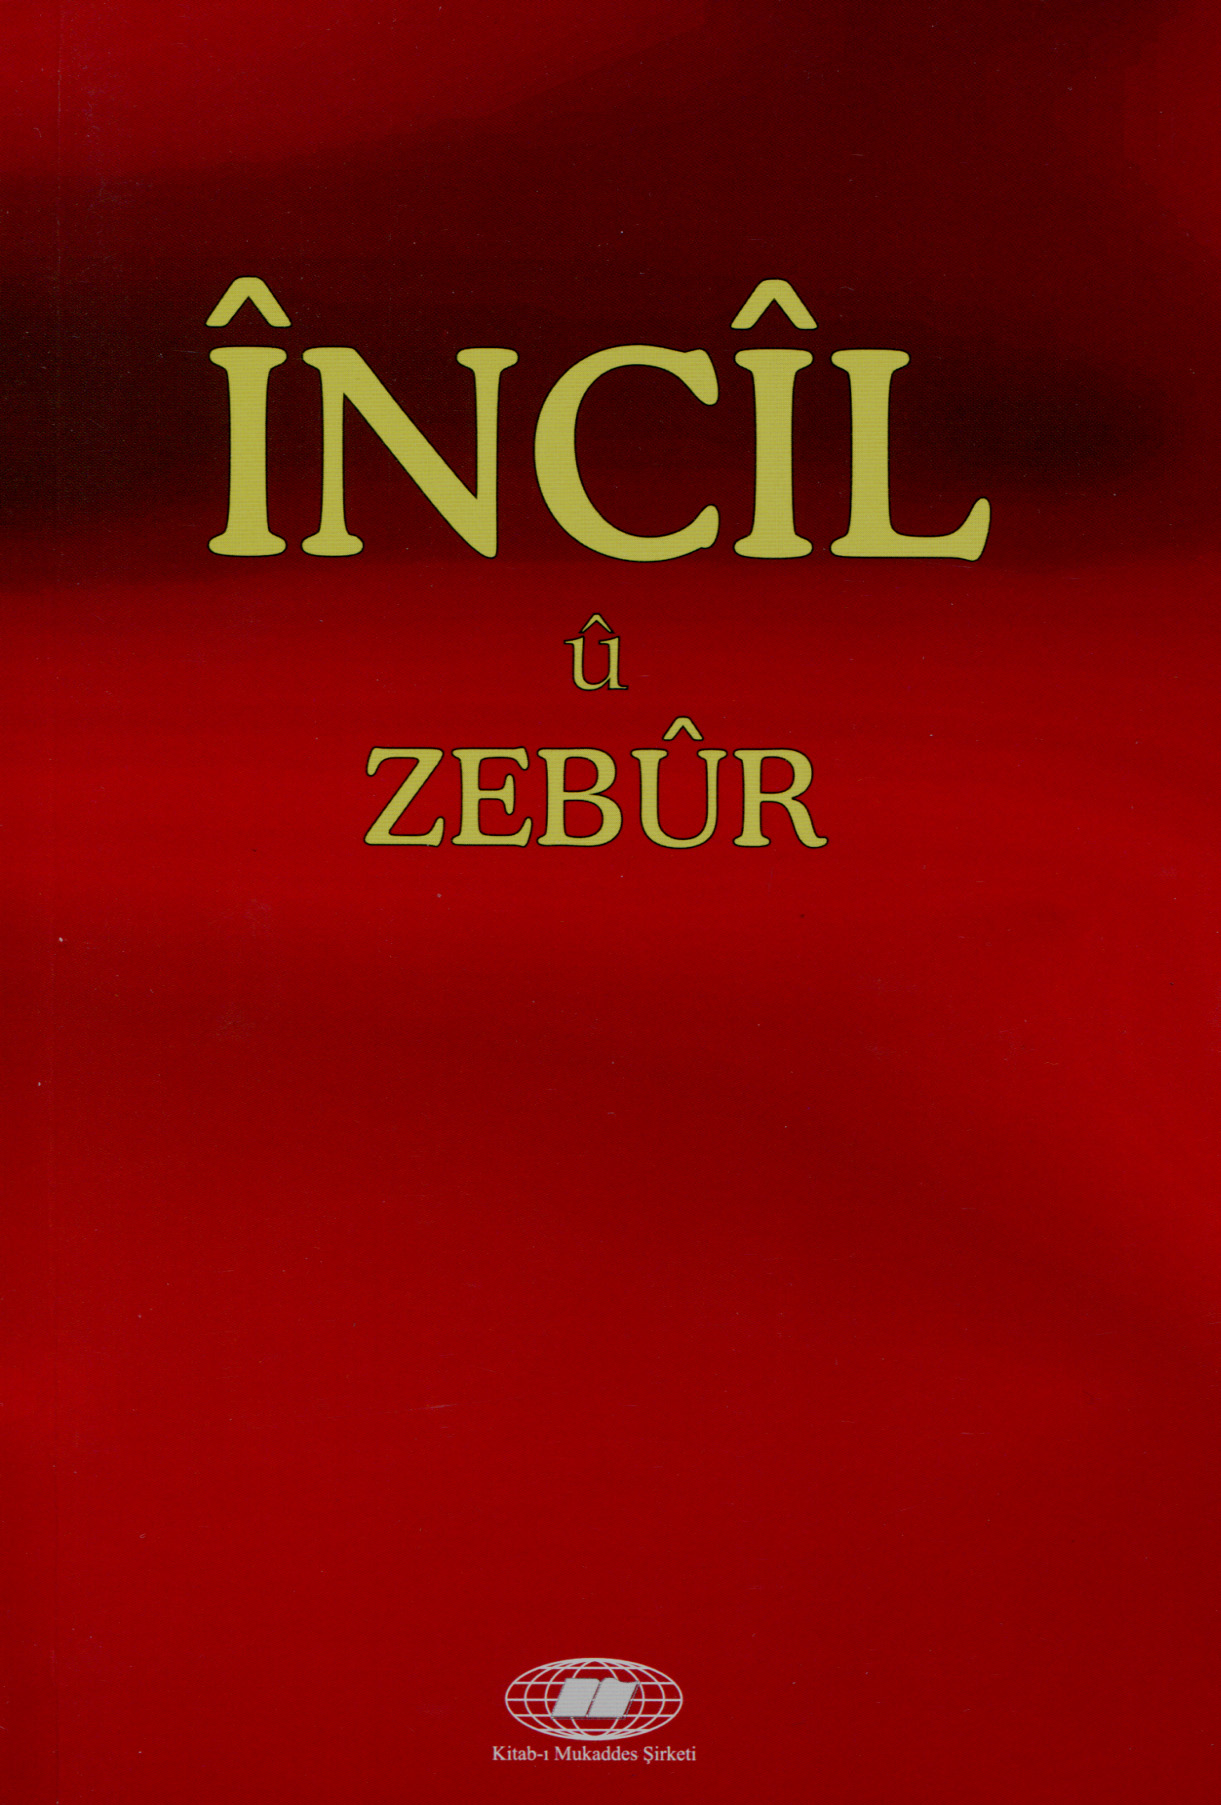 Incil u Zebur Kurd Újszövetség